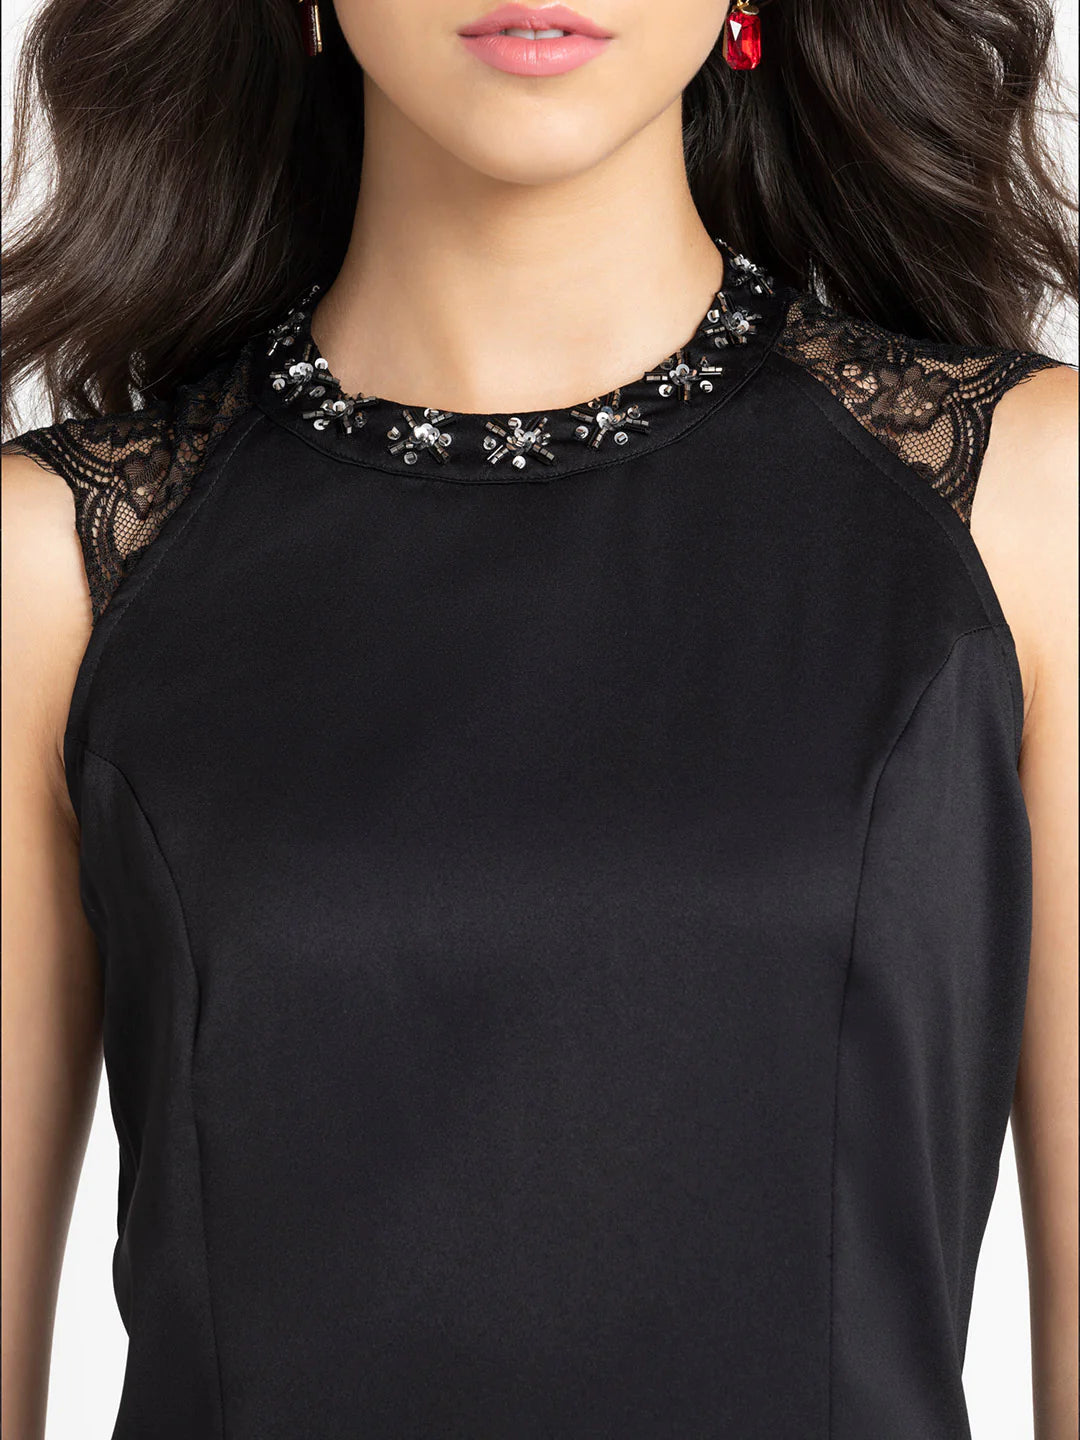 Black Lace Party Dress for Women | Elegant Black Lace Detail Party Dress